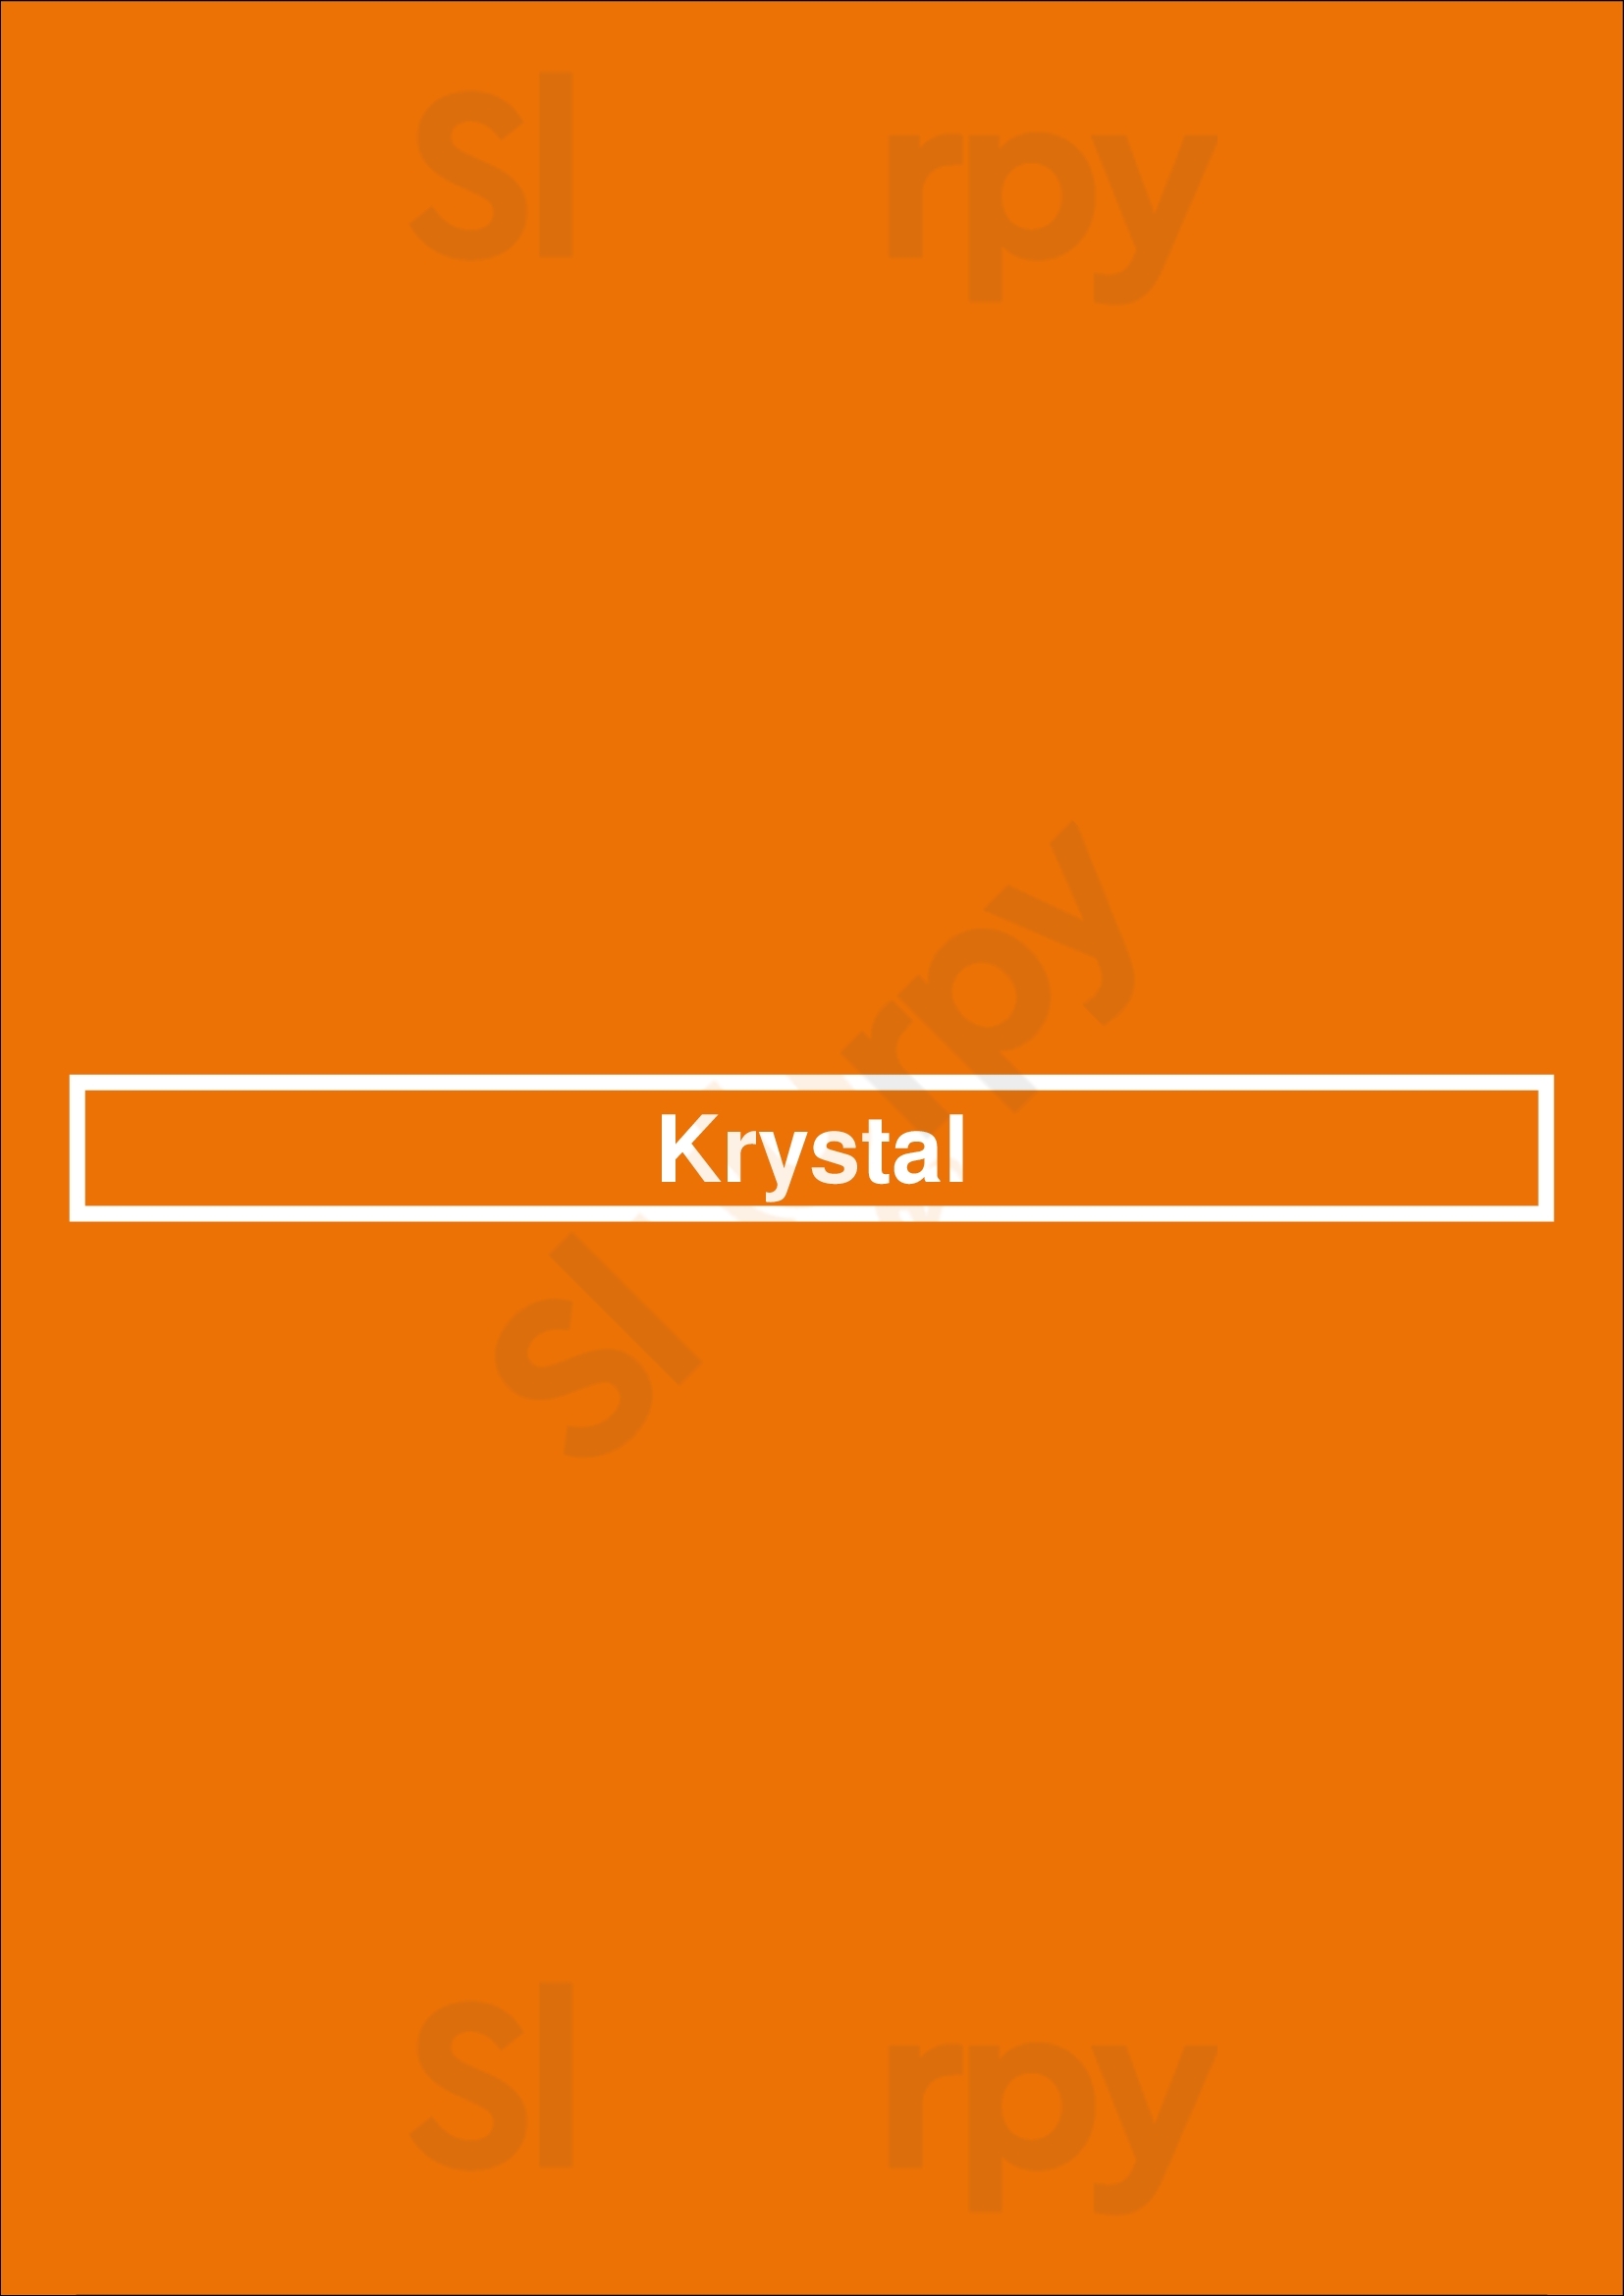 Krystal Orange Park Menu - 1